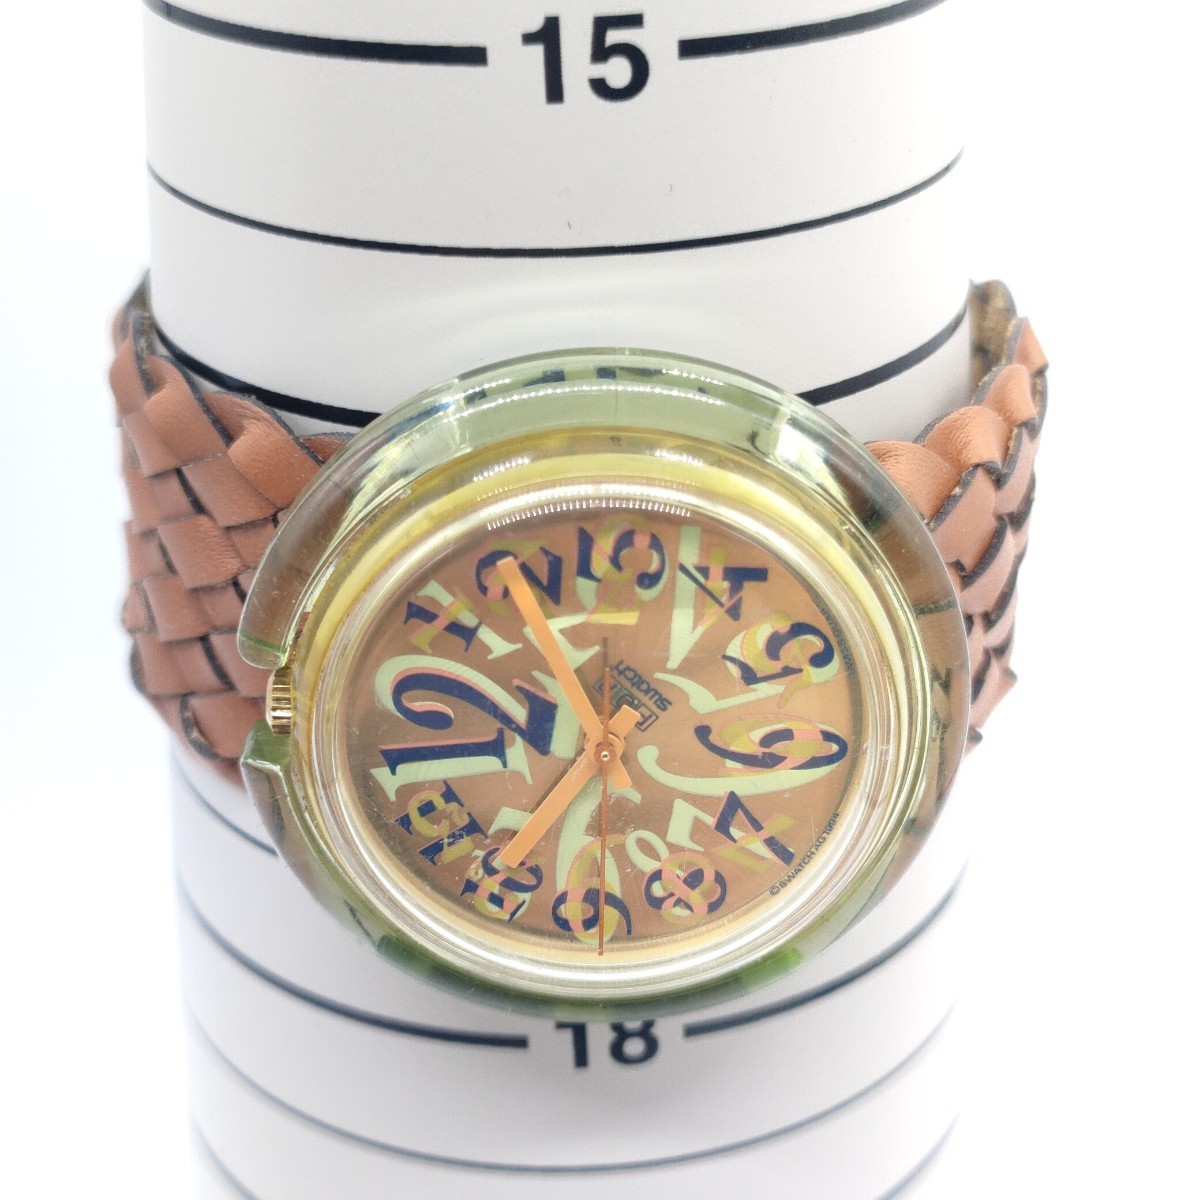 POP Swatch メンズ 腕時計 時計 ポップ スウォッチ クオーツ クォーツ QUARTZ アナログ 3針 ブラウン 革ベルト メッシュ 1994年 SCH 23_画像5